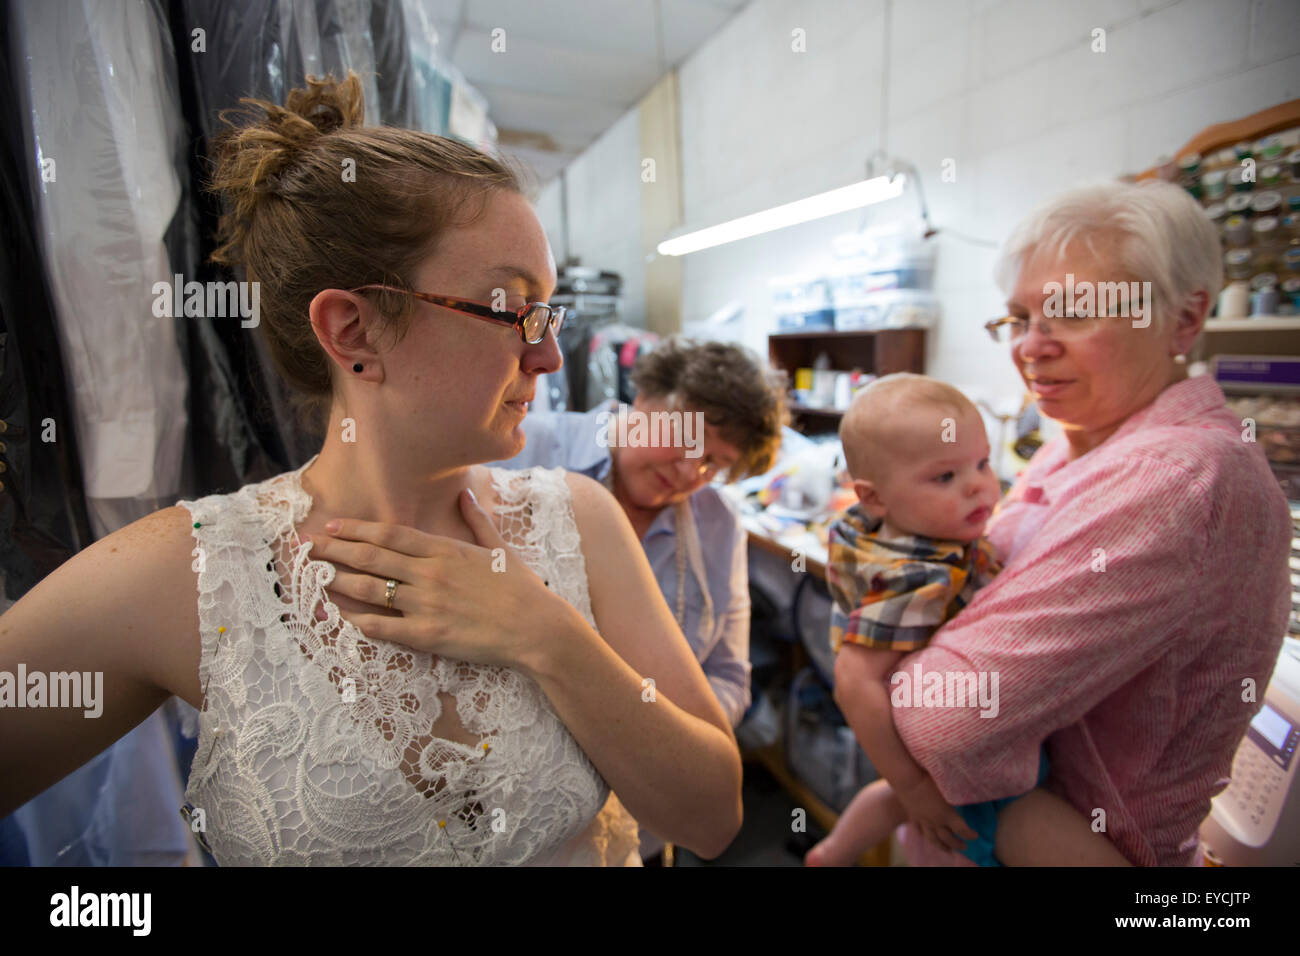 Broomfield, Colorado - une jeune femme est équipé d'une robe de mariage alors que sa mère tient son bébé. Banque D'Images